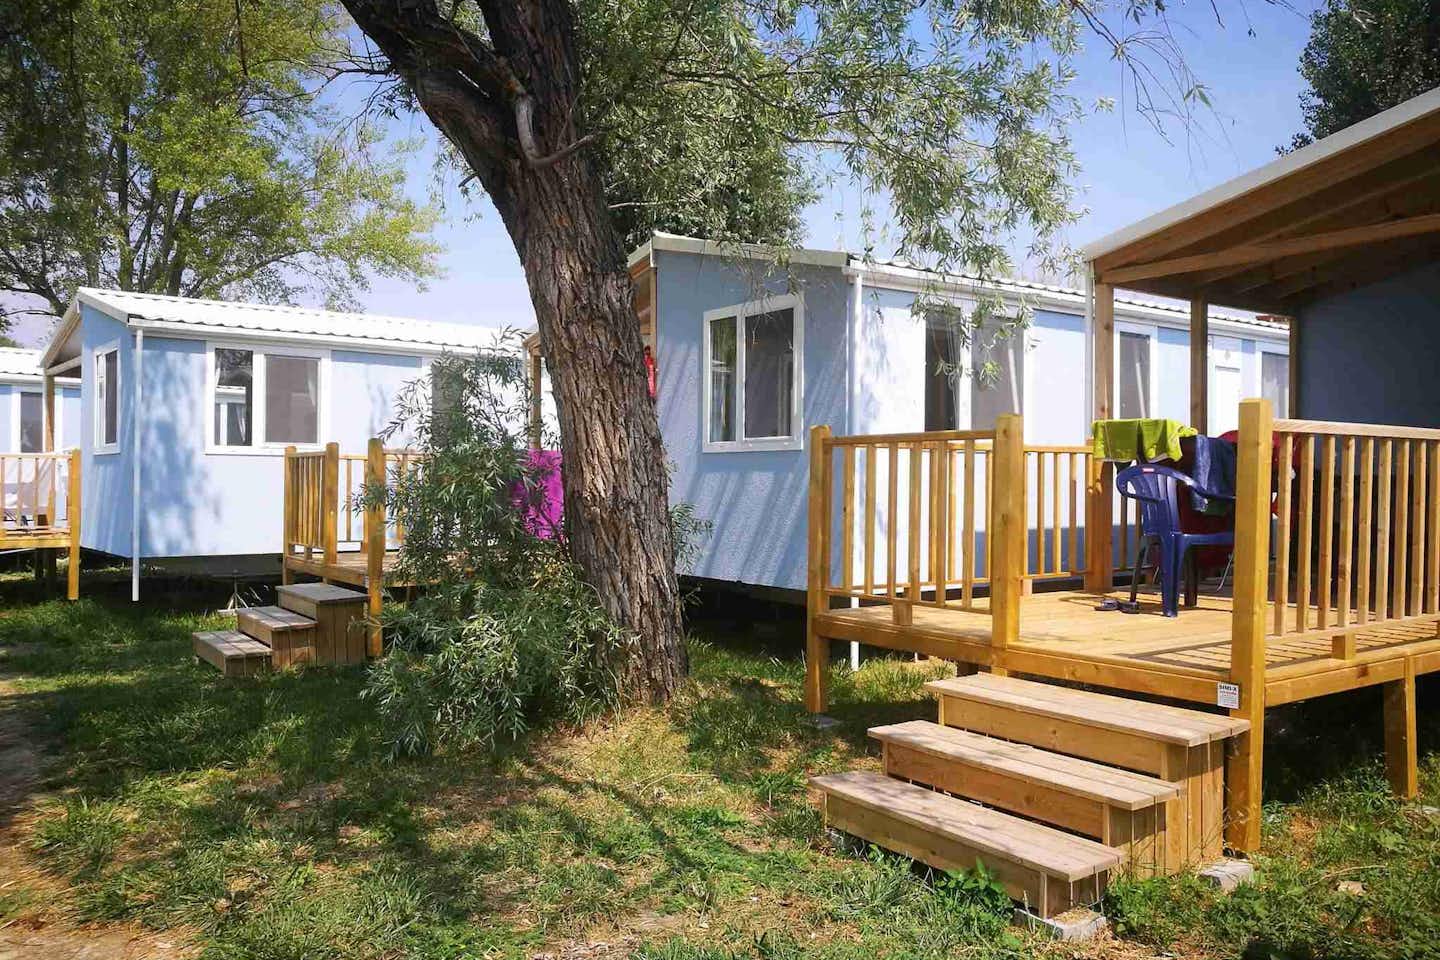 Pelso Camping - Mobilheime mit Veranda und Sitzgelegenheiten zwischen Bäumen